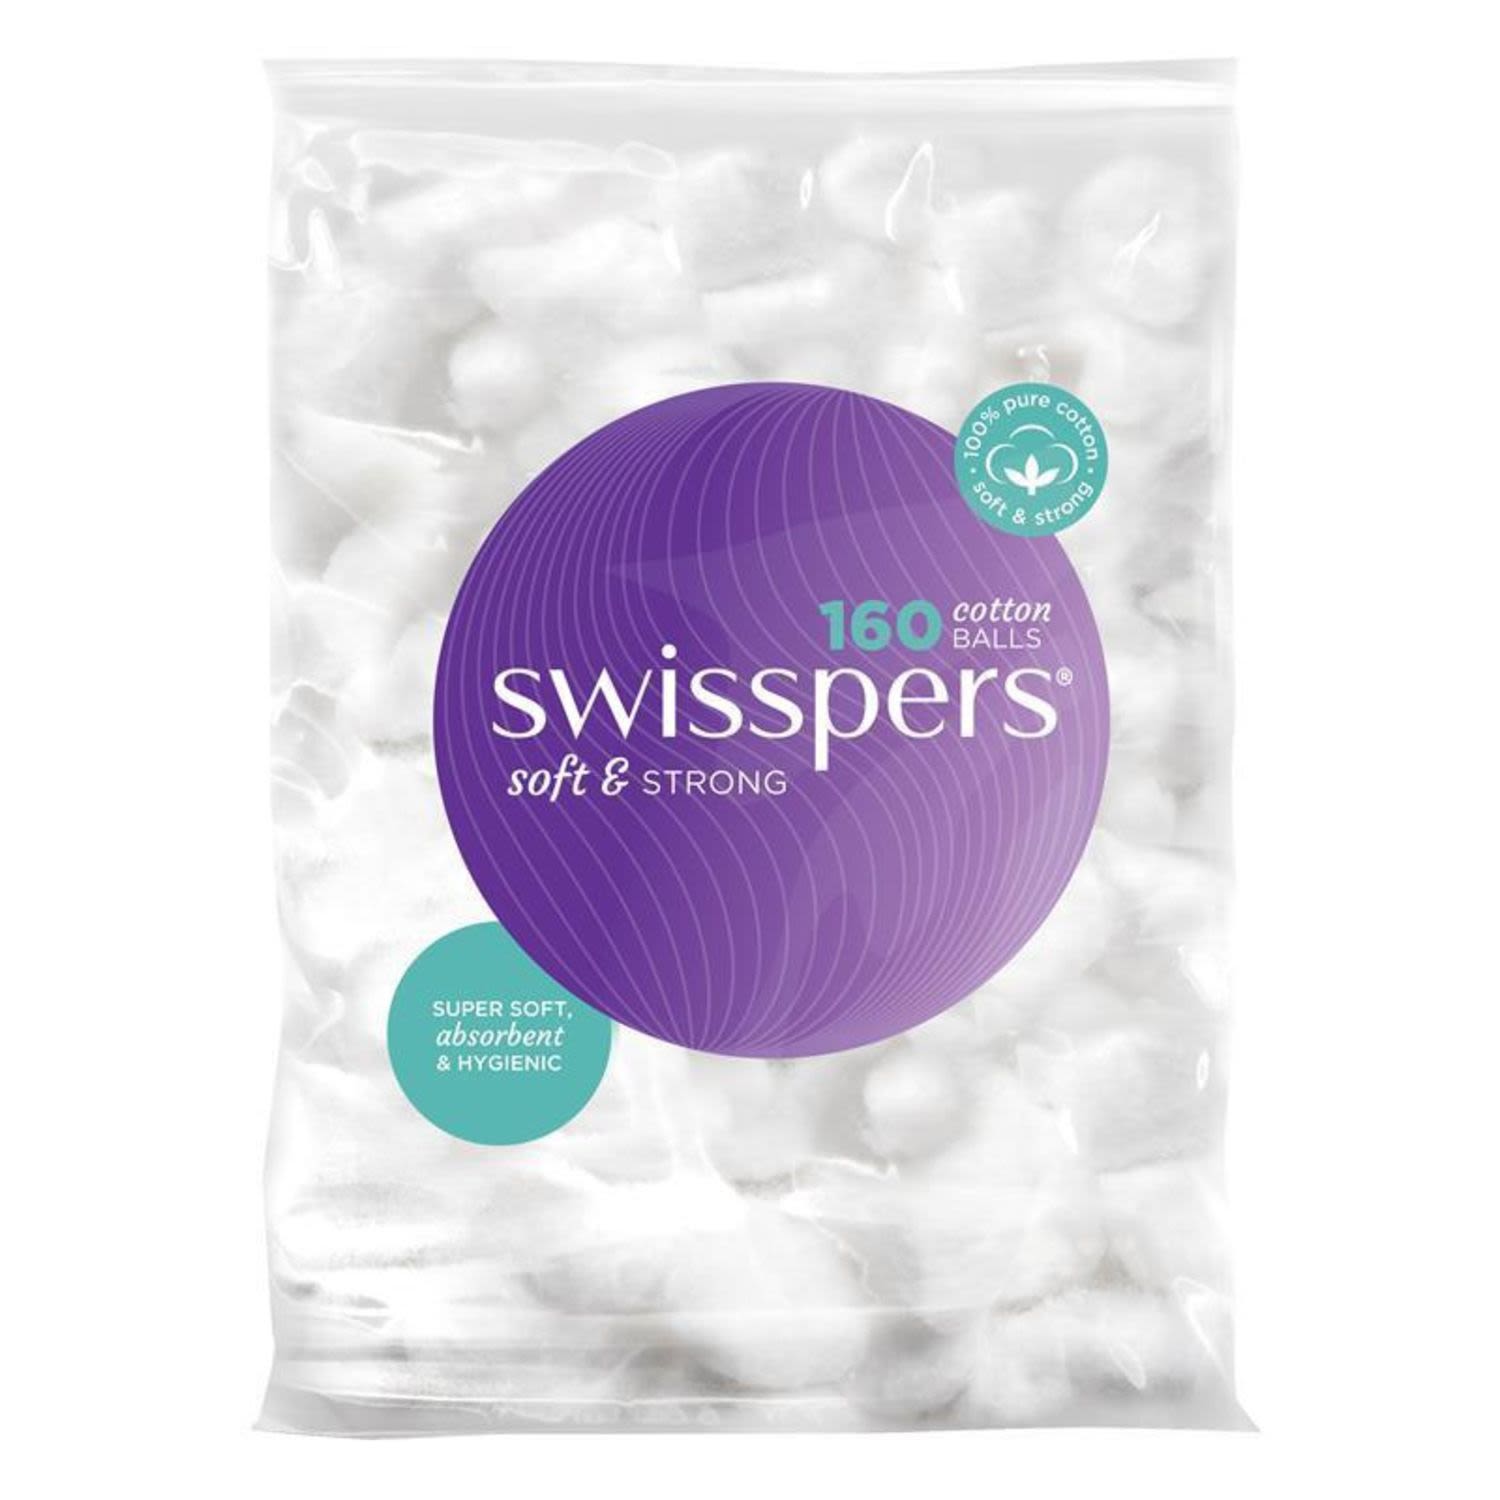 Swisspers Cotton Balls 160s